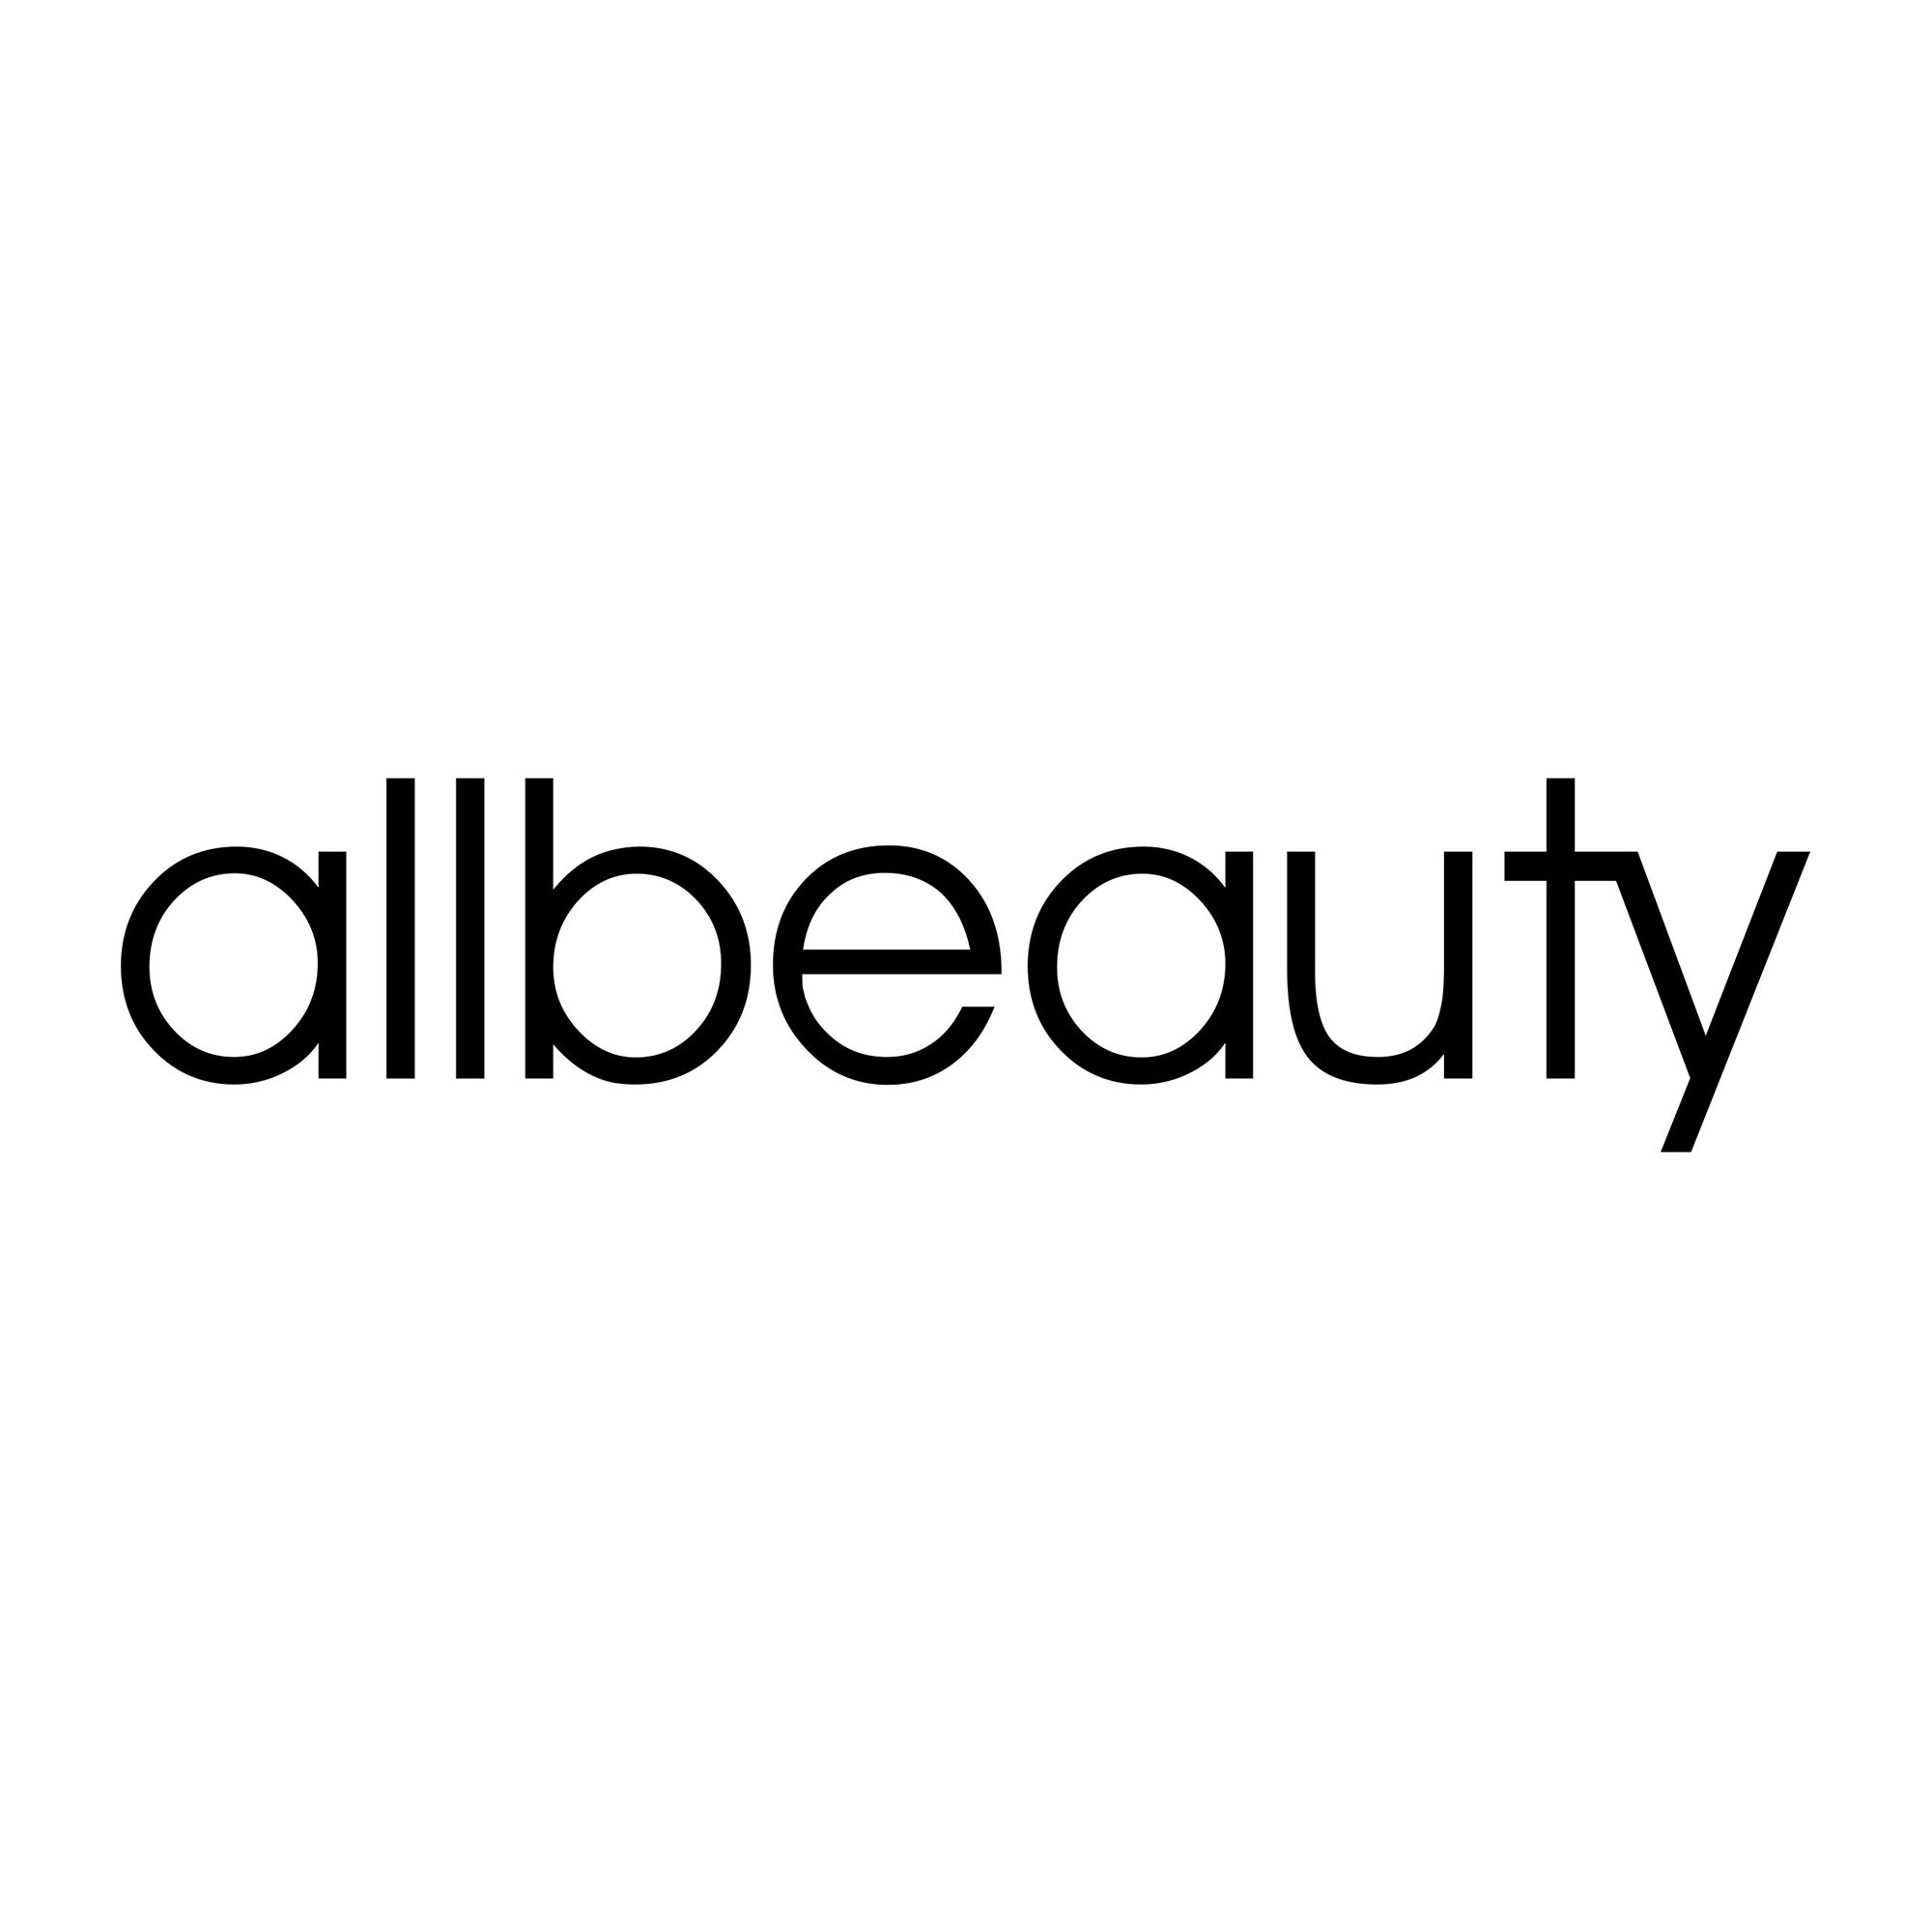 Business logo of Allbeauty